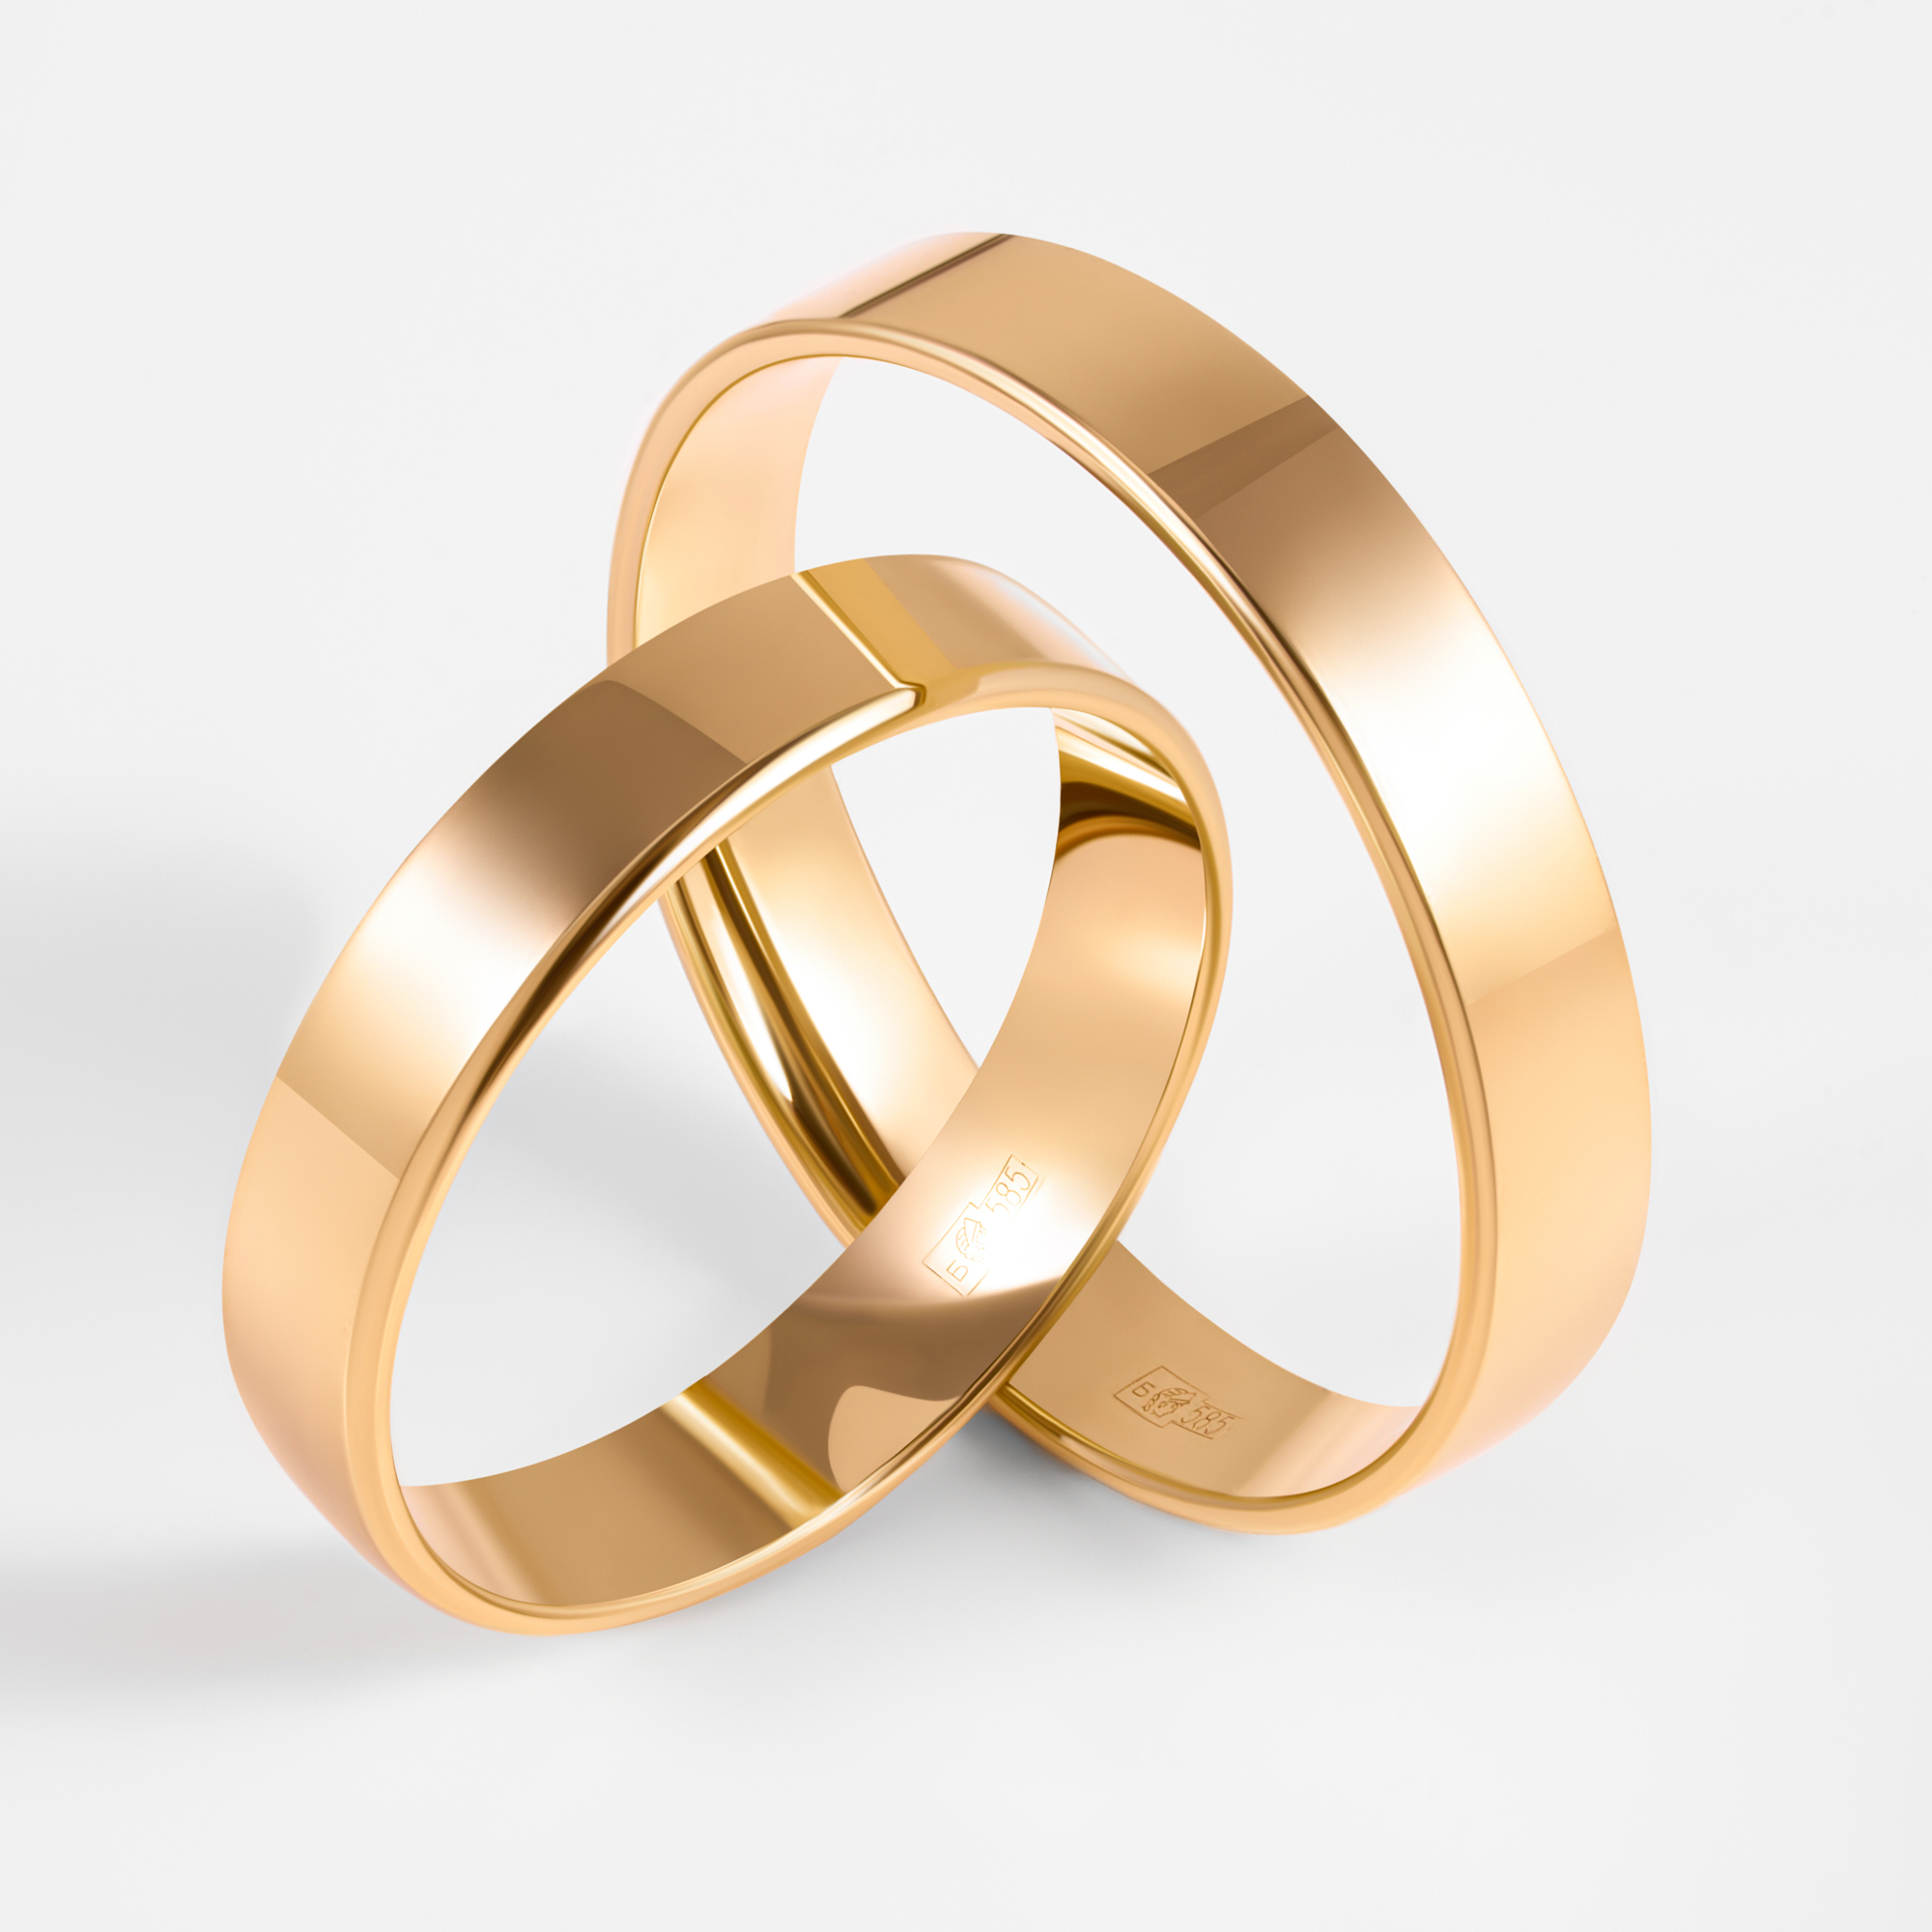 Золотое кольцо обручальное Невскийтехнолзавод из красного золота 585 пробы 8Н1131089, размеры от 15 до 23.5